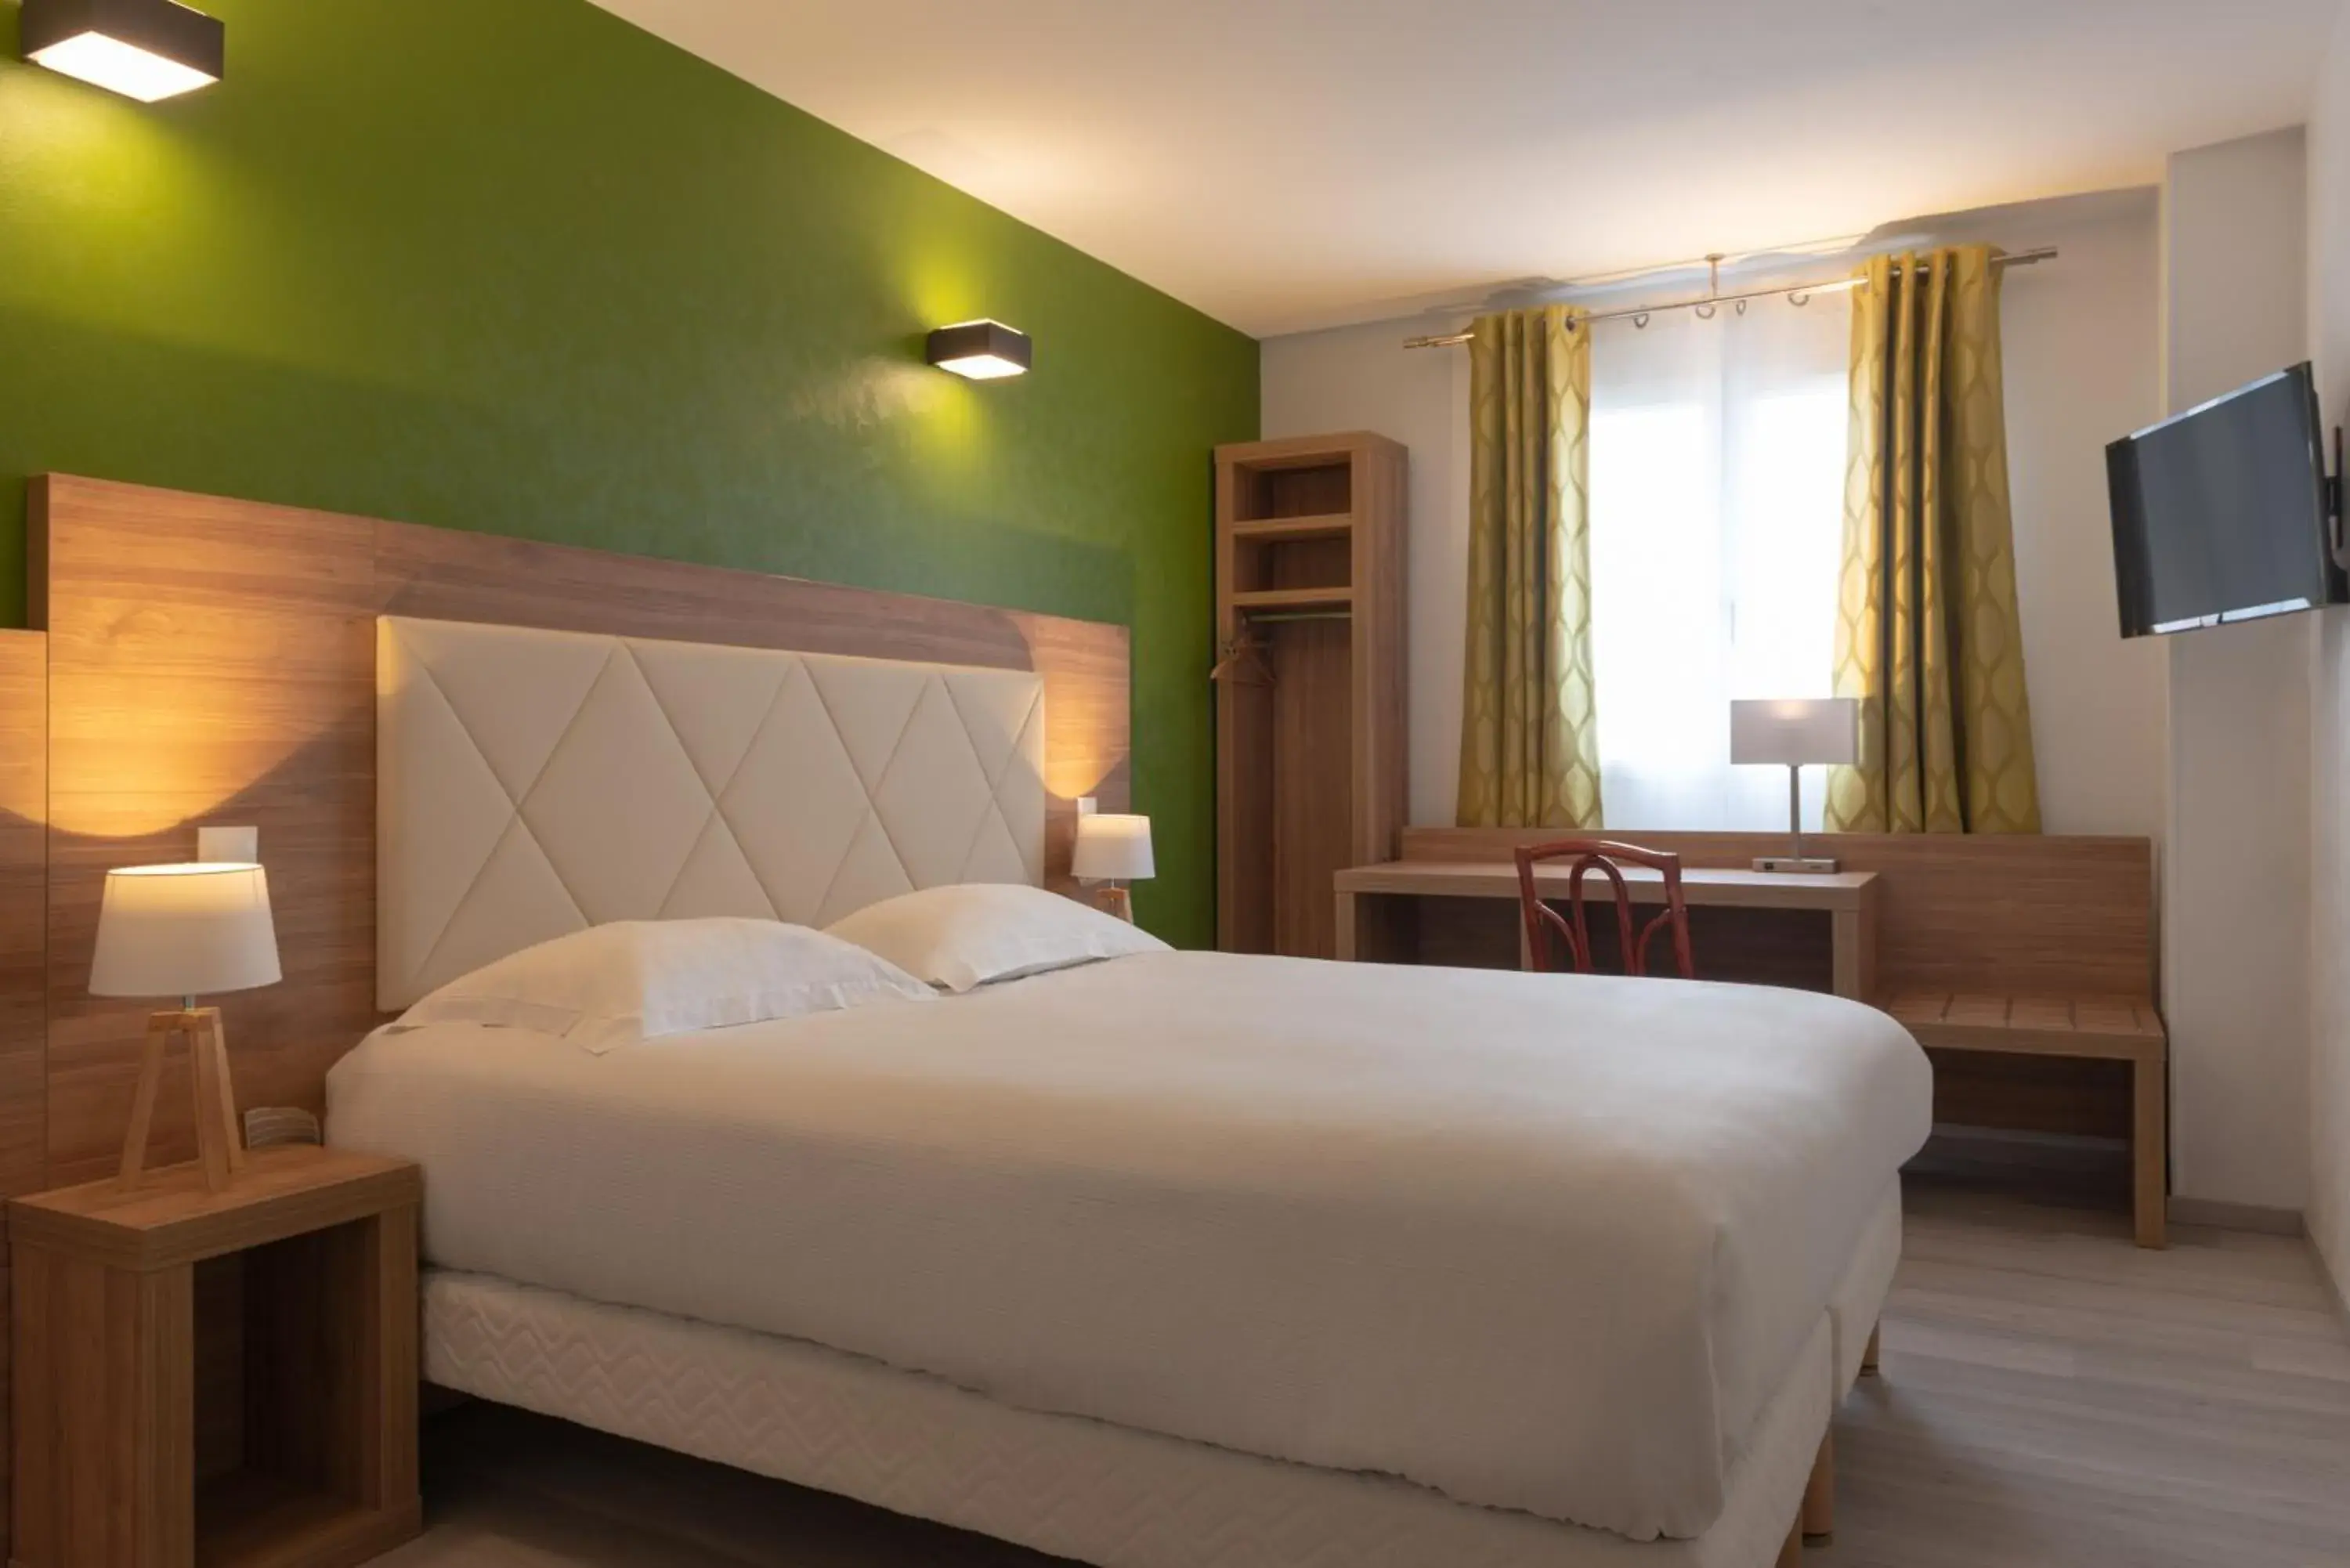 Bed in Hotel de l'Orme, Akena